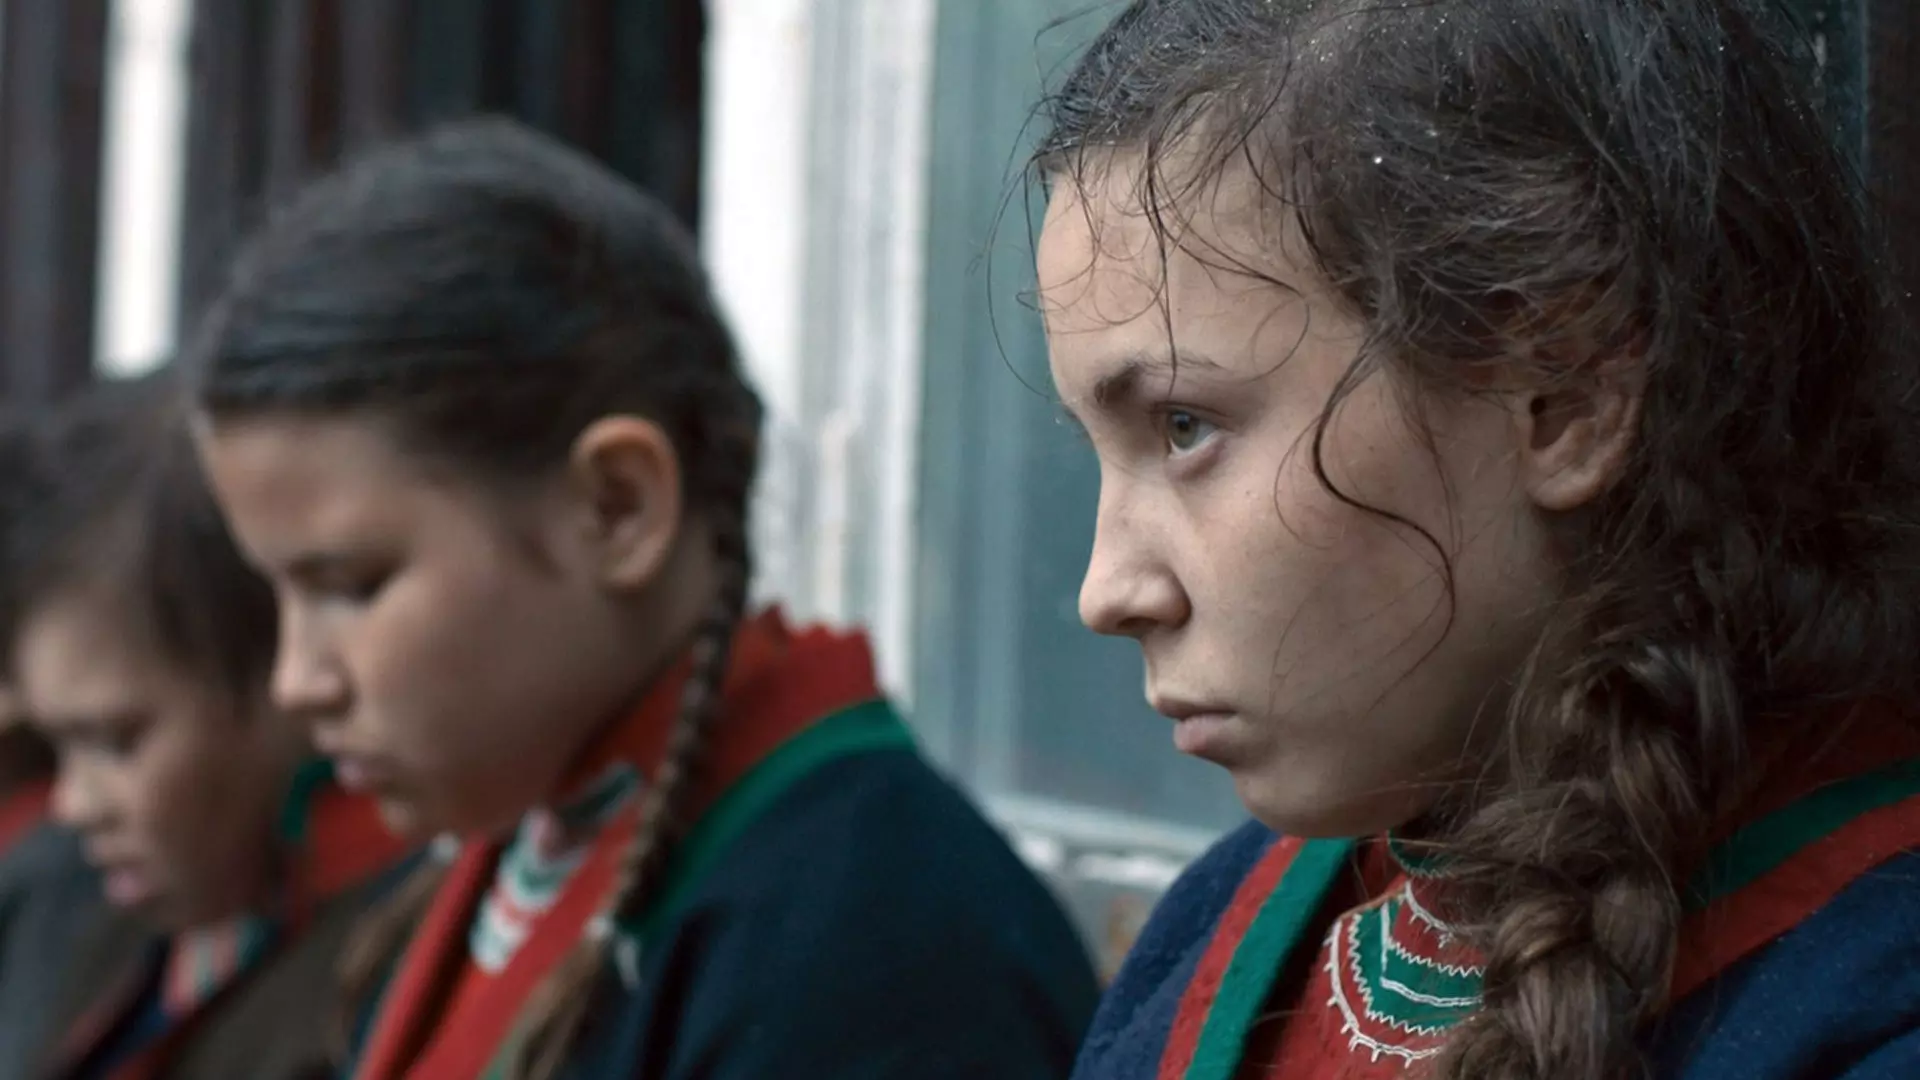 Nærbilde av noen samiske barn og ungdommer som står på en rekke. De ser triste og alvorlige ut, og har på seg kofte. 